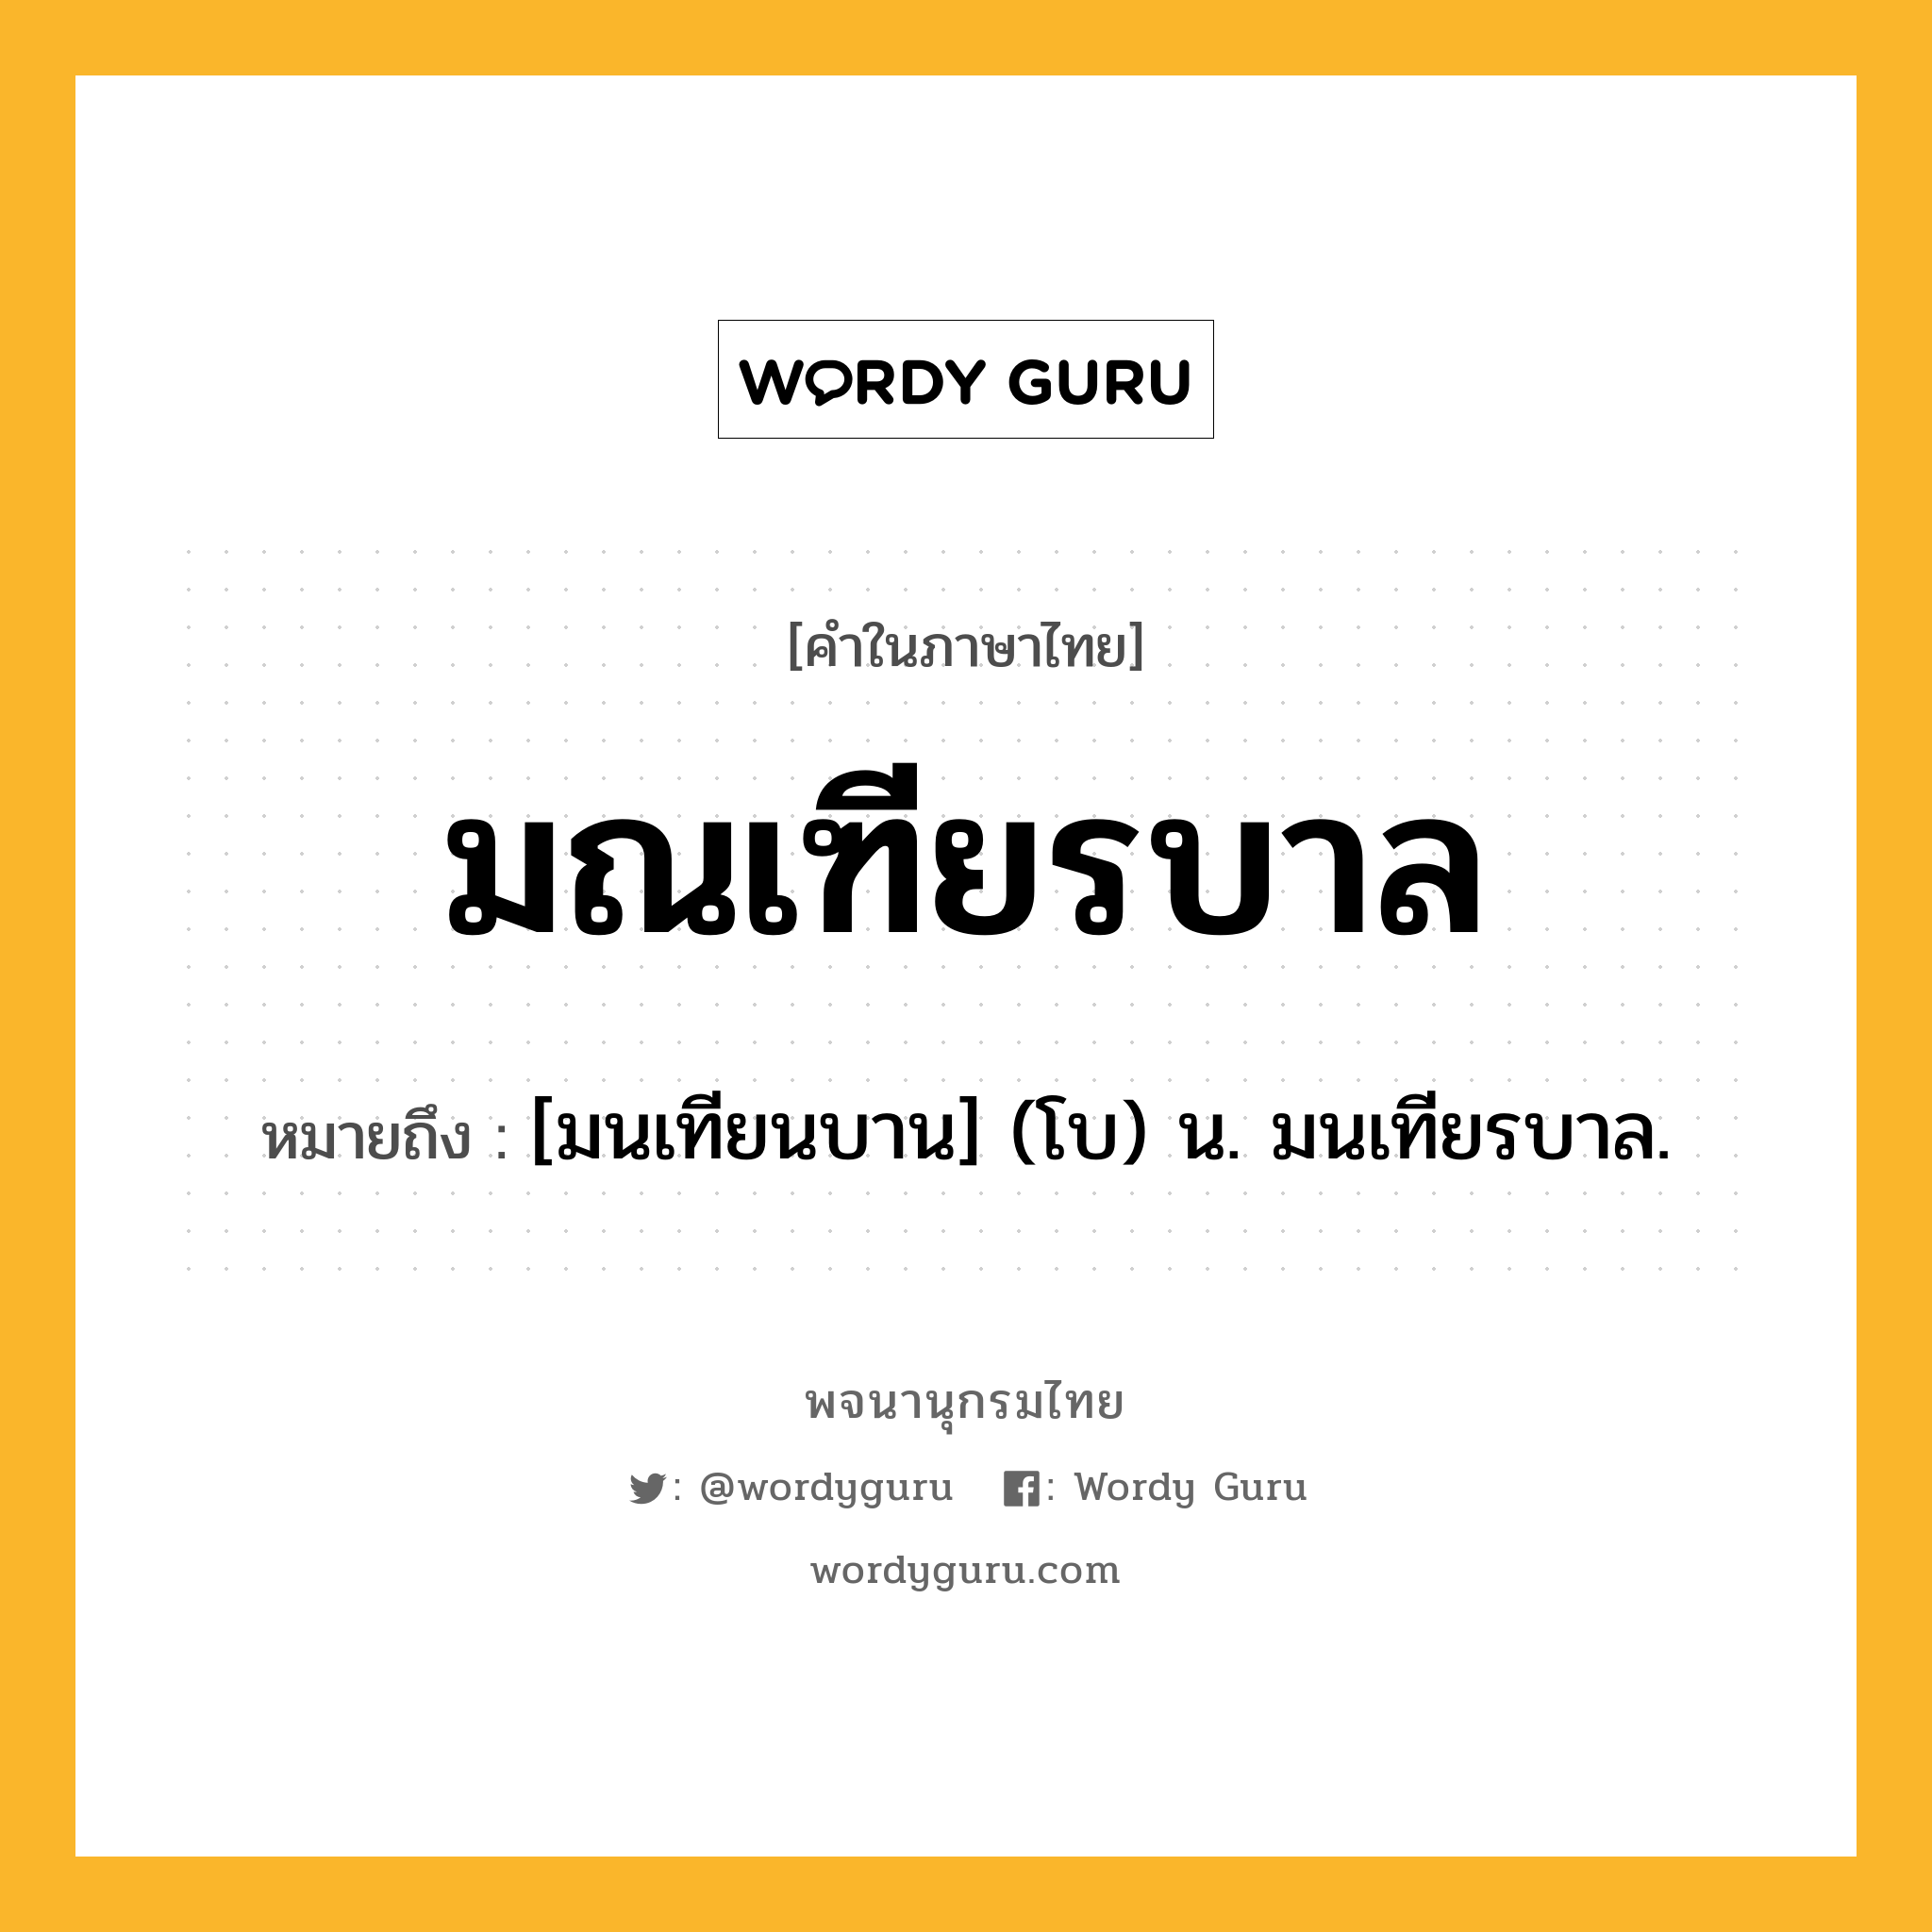 มณเฑียรบาล ความหมาย หมายถึงอะไร?, คำในภาษาไทย มณเฑียรบาล หมายถึง [มนเทียนบาน] (โบ) น. มนเทียรบาล.